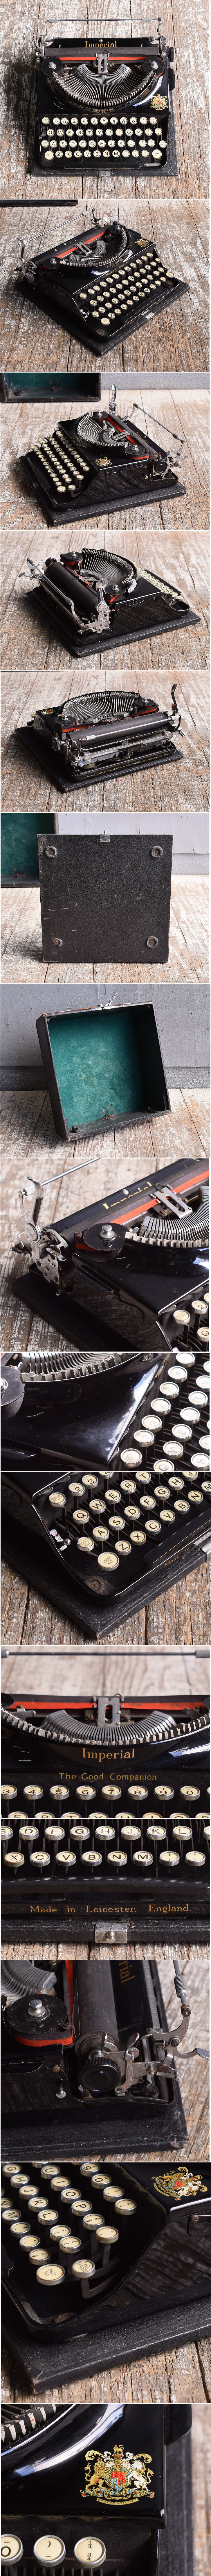 イギリスアンティーク タイプライター ディスプレイ 11638